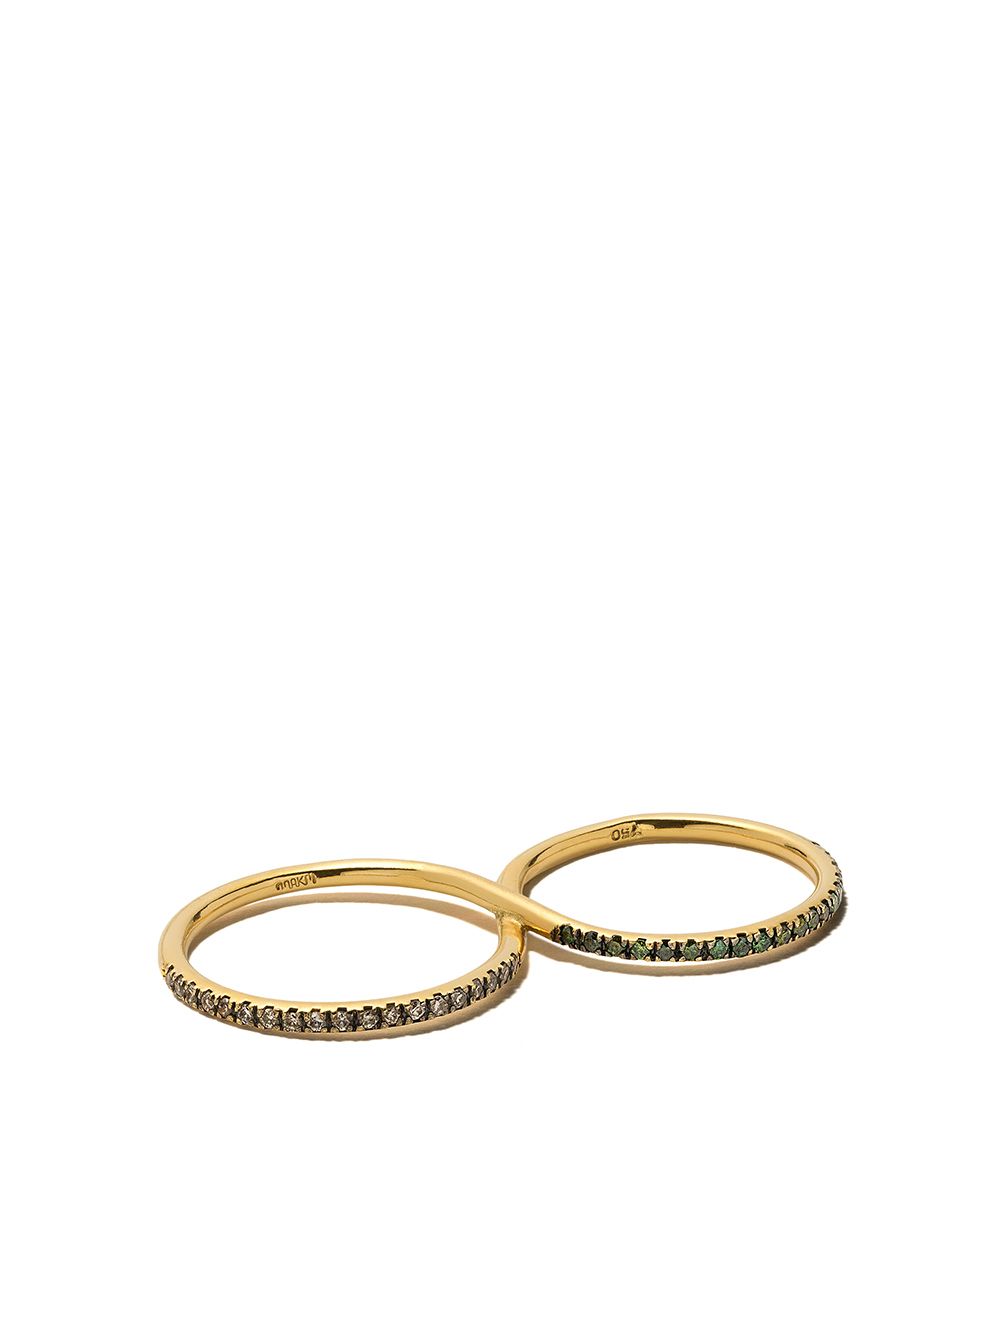 фото Ileana makri золотое кольцо с бриллиантами